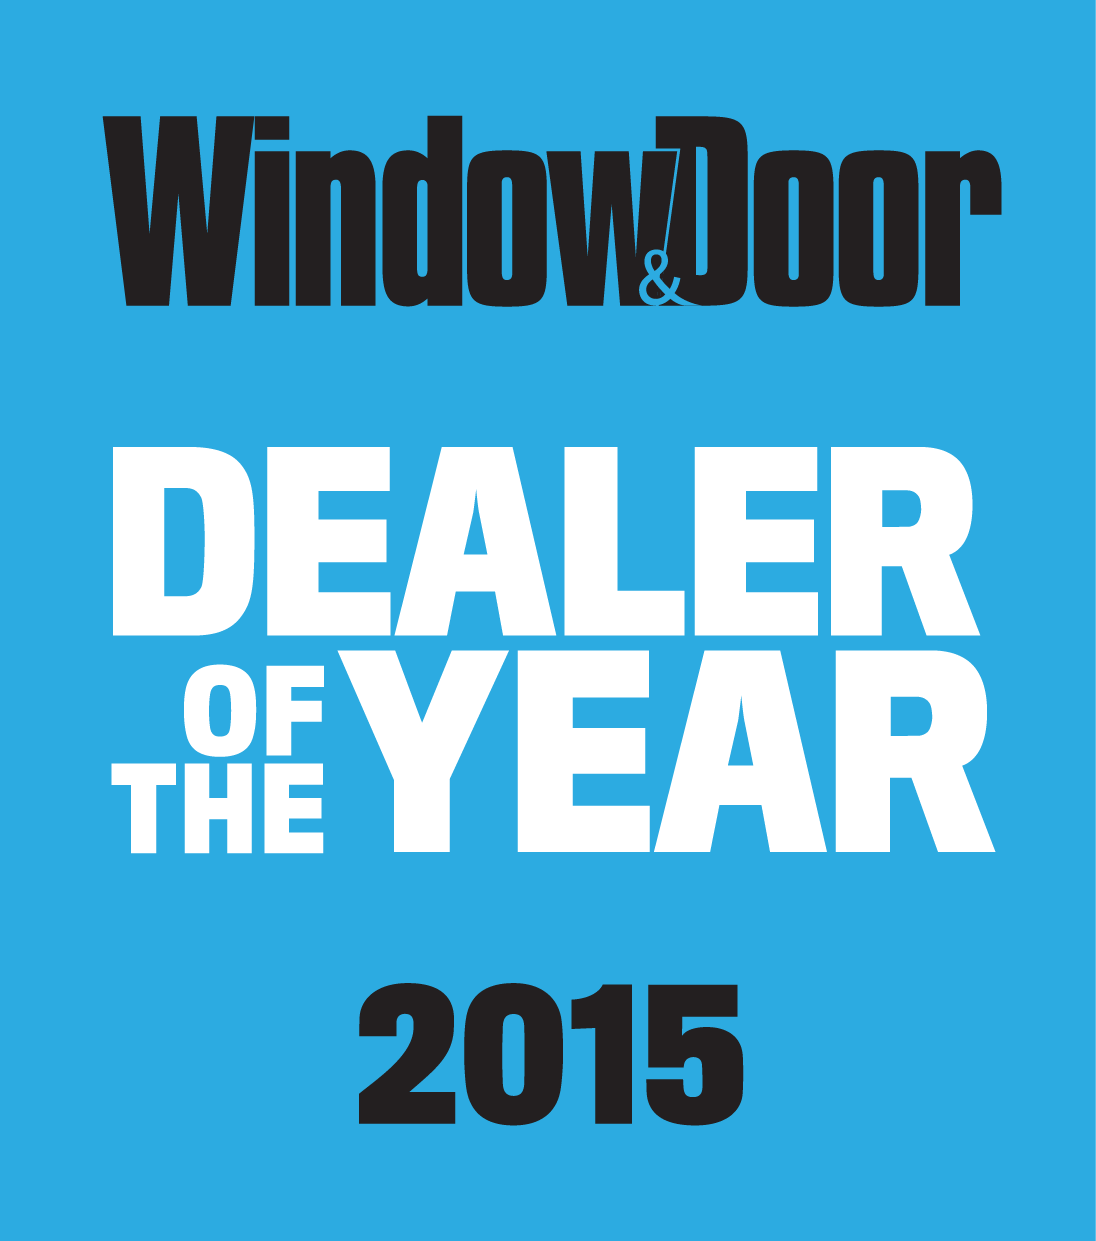 Winner of the Window and Door Dealer of the Year Award